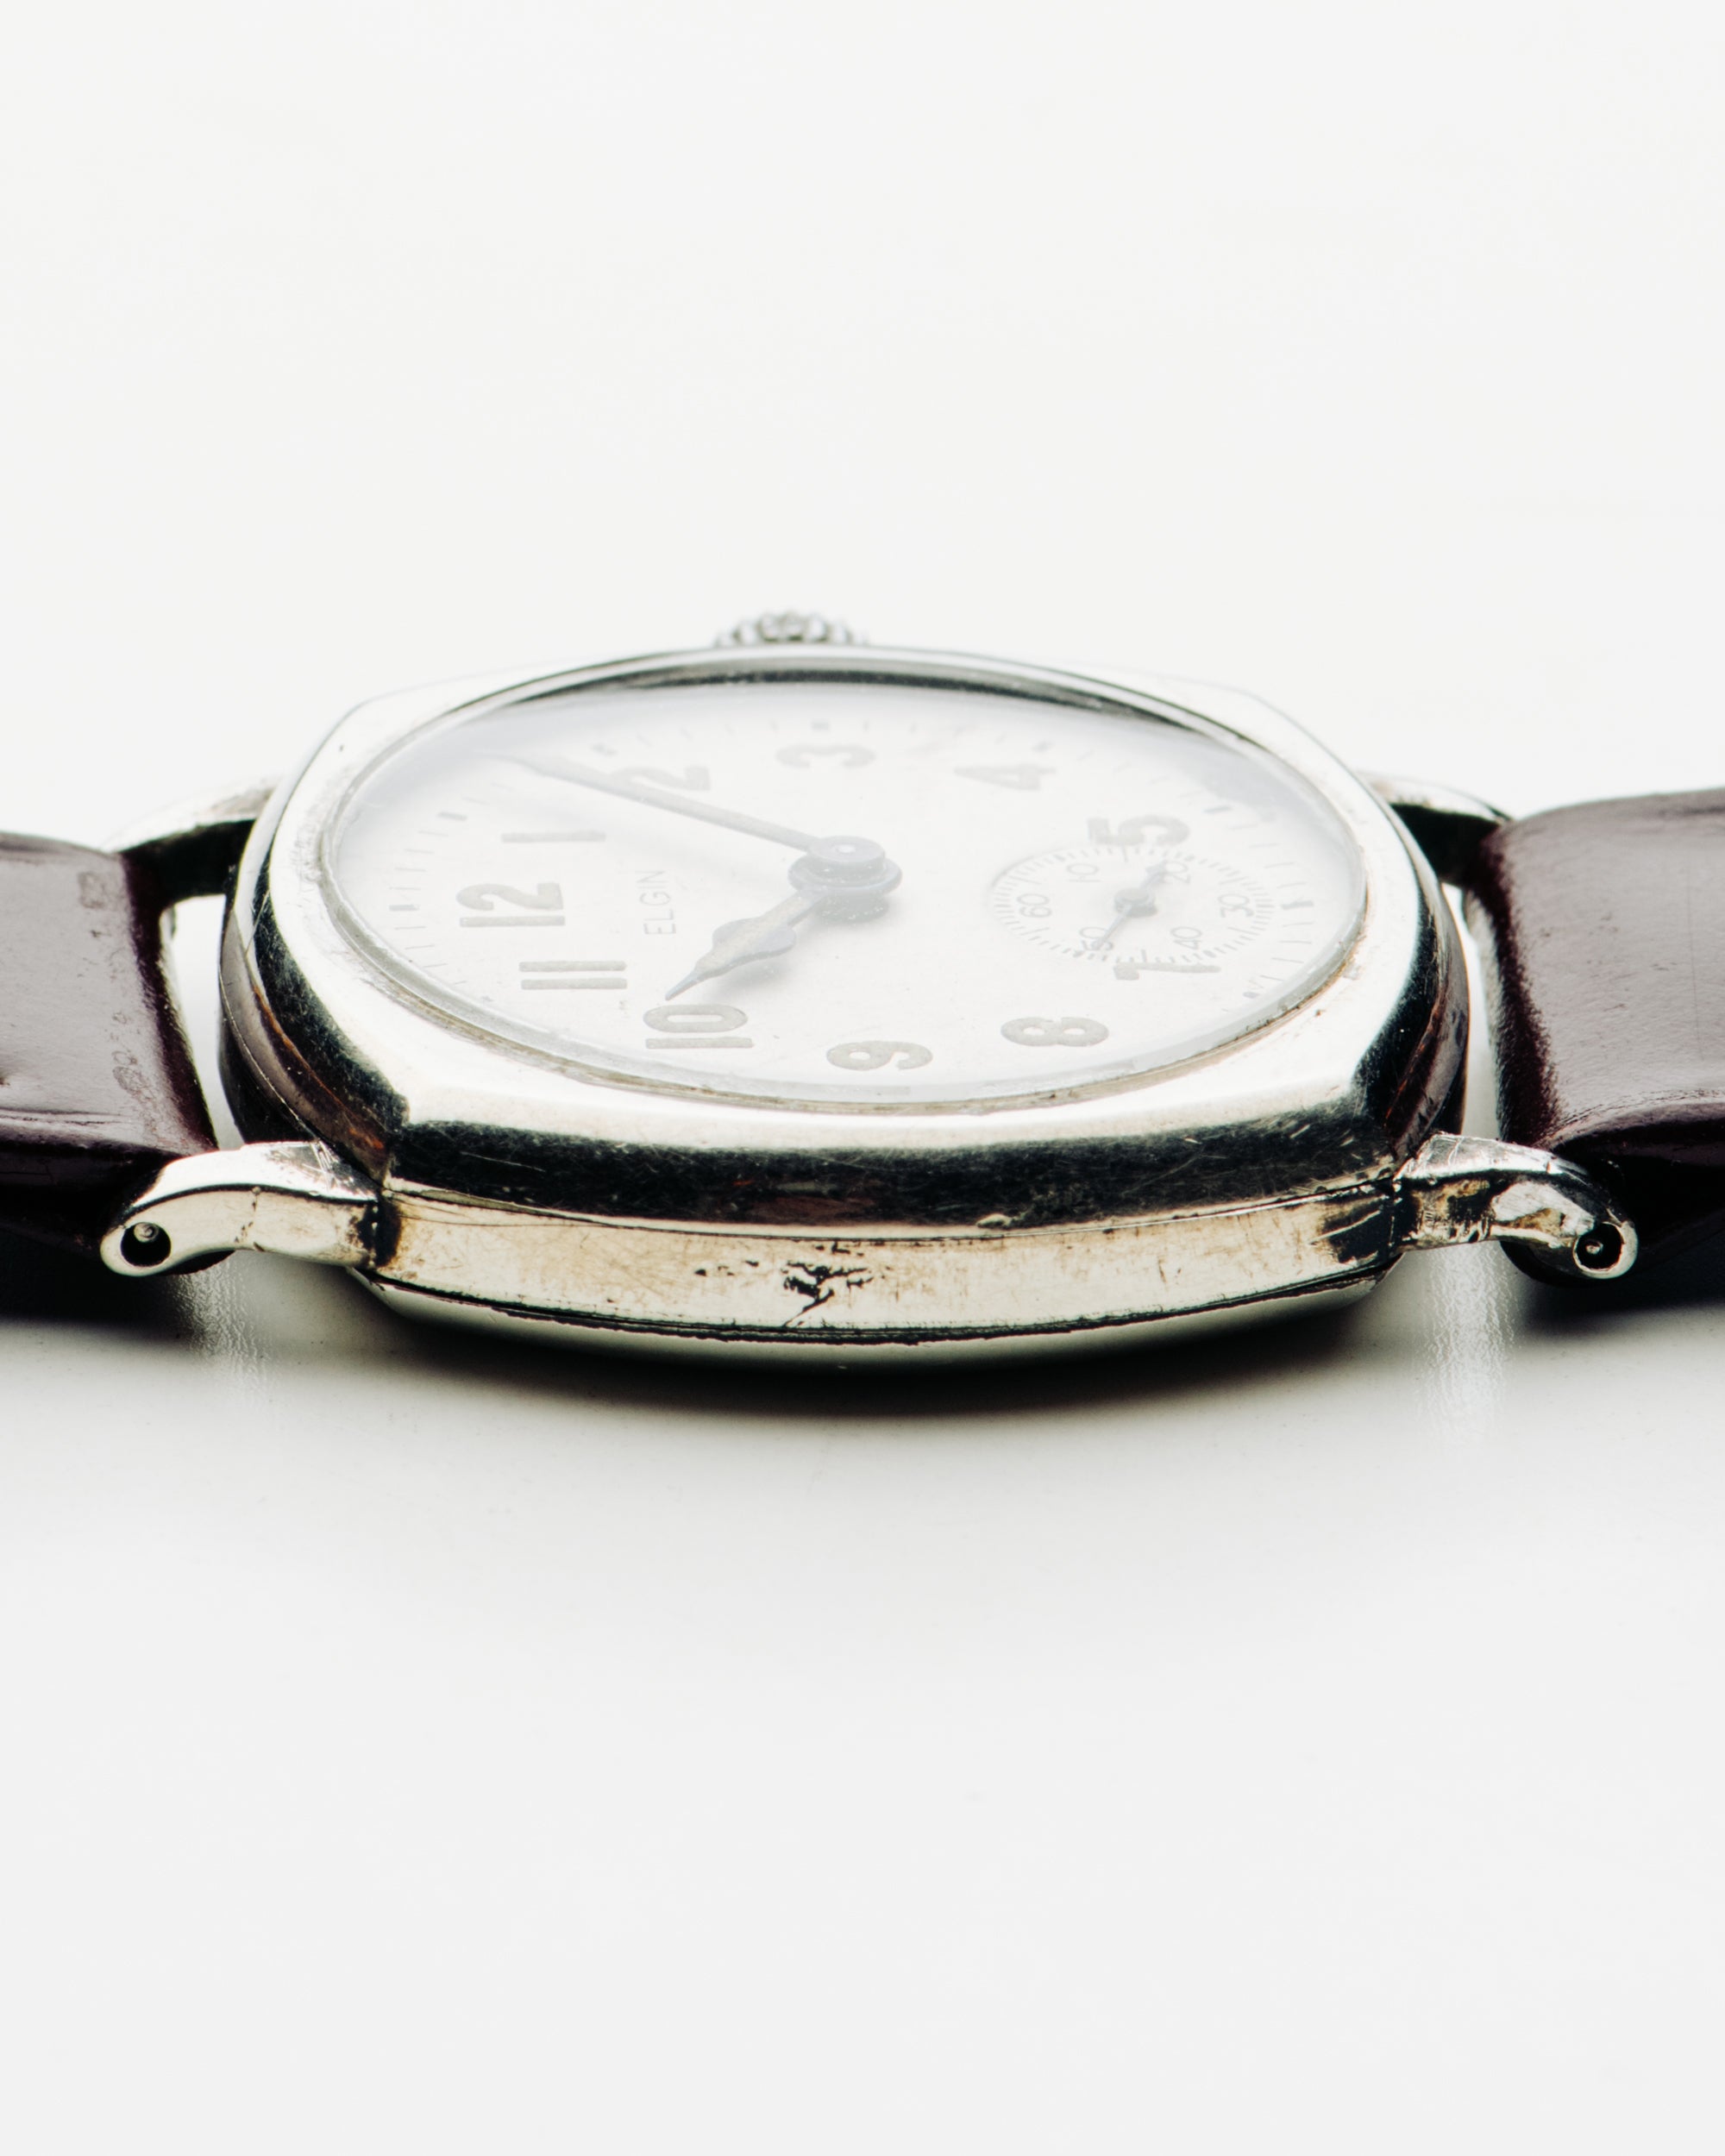 Mondaine Cushion 41 mm Watch in White Dial